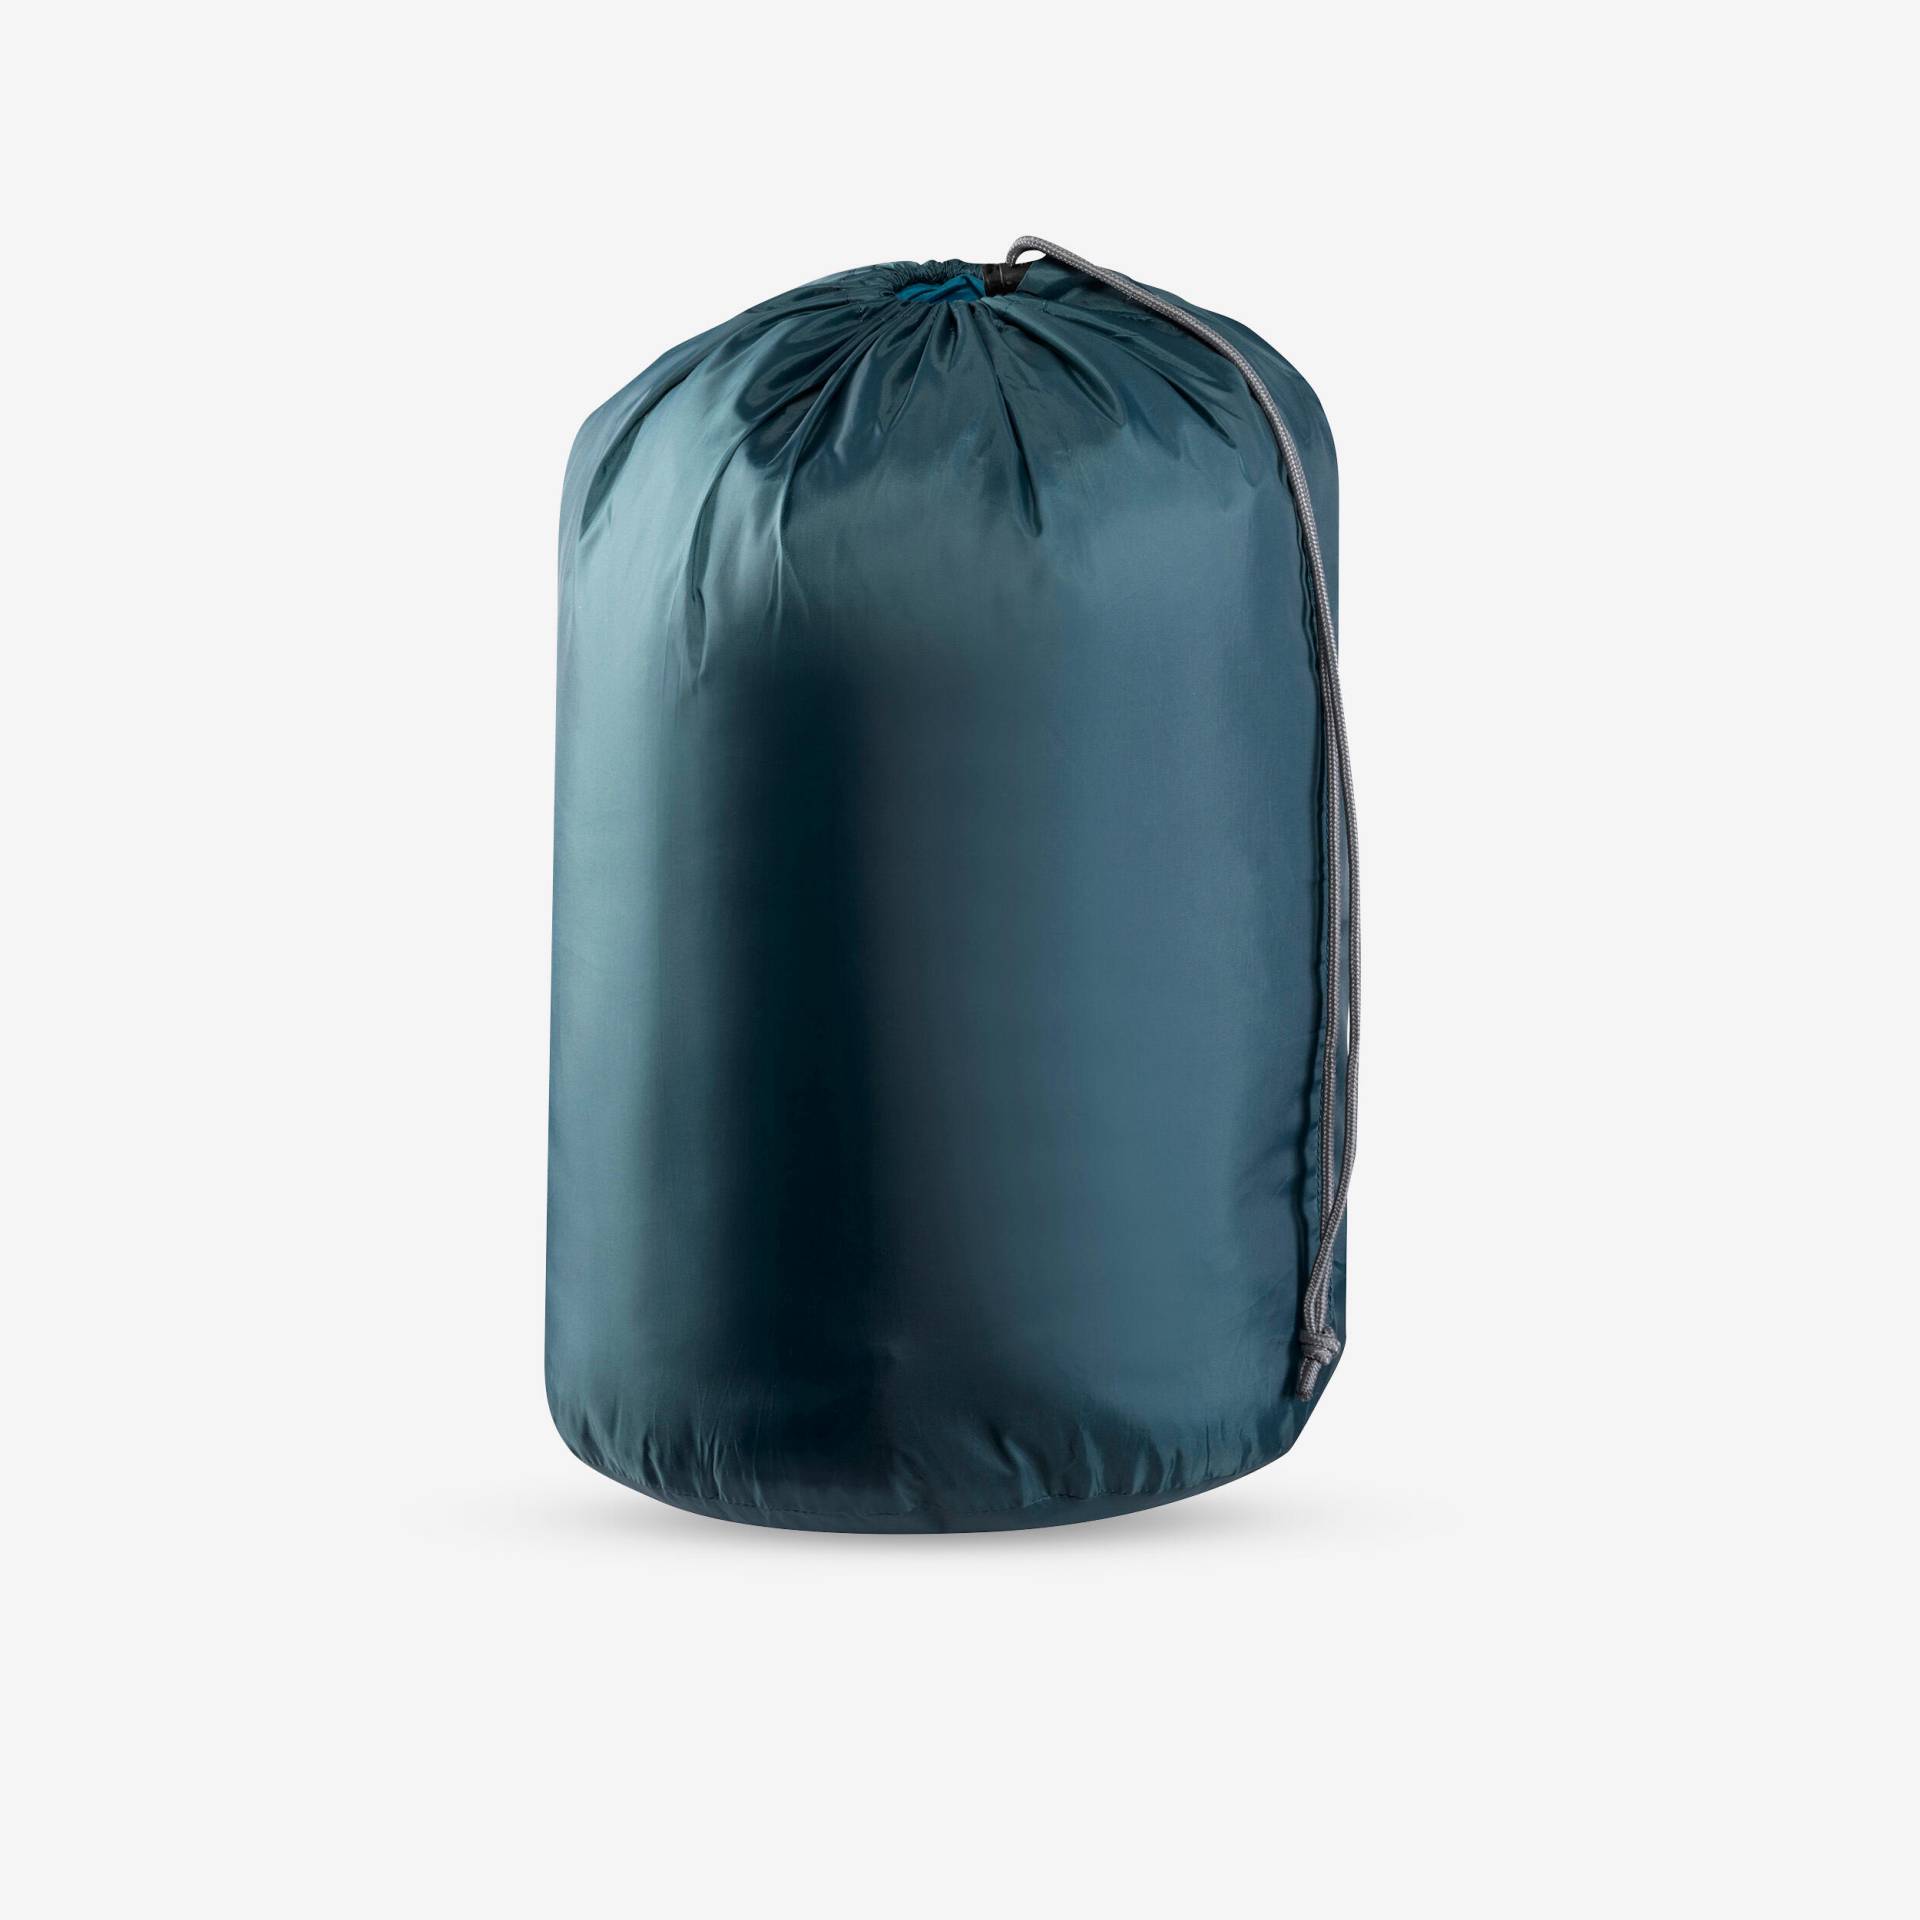 Hülle für Schlafsack oder Campingmatratze blau von QUECHUA